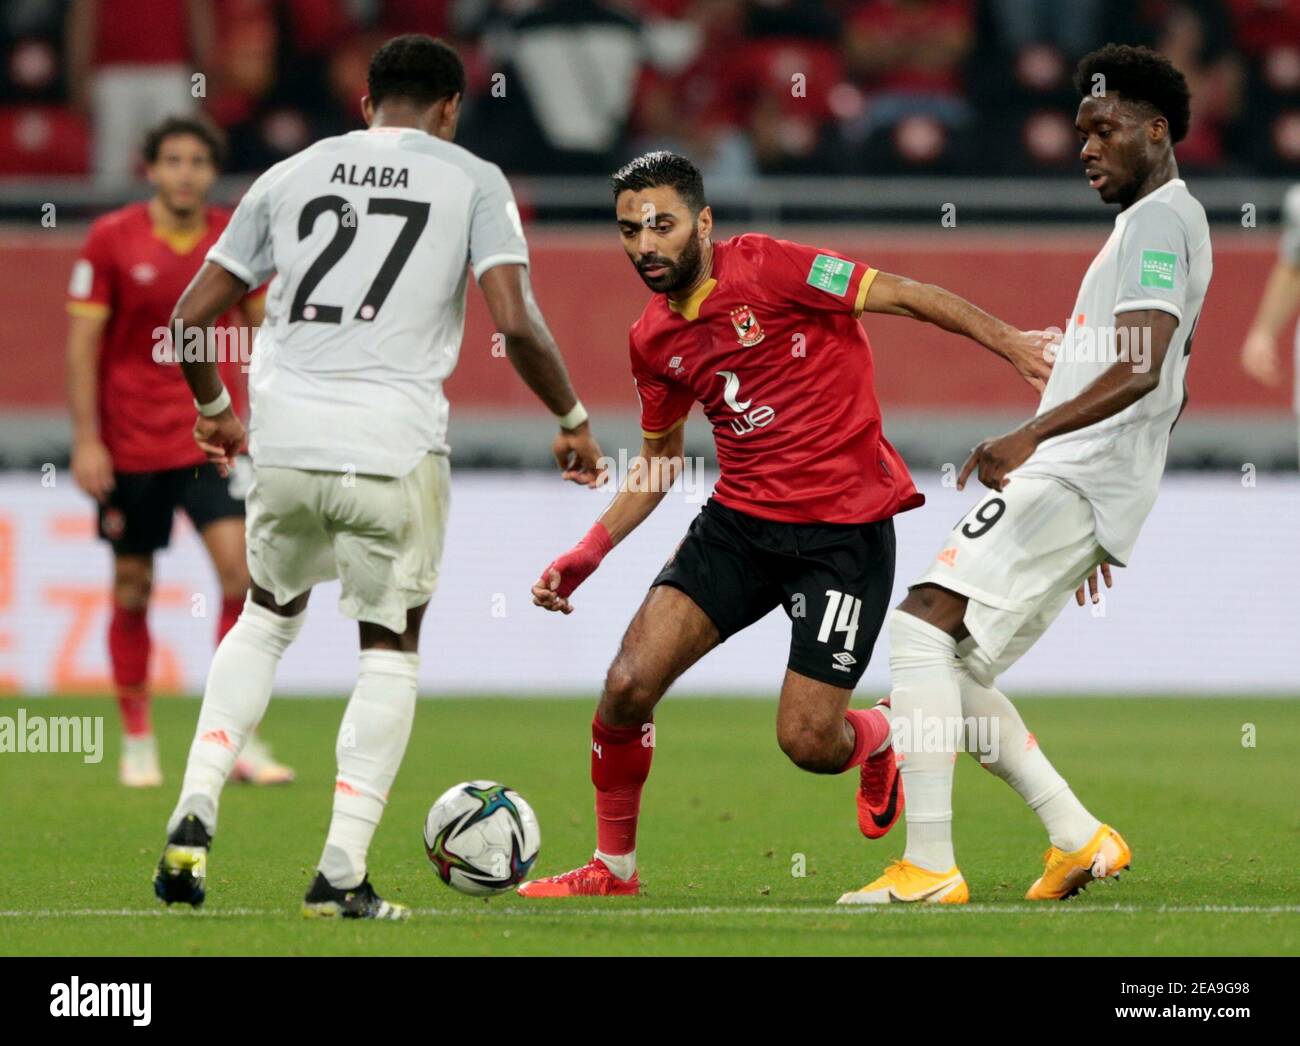 Soccer Football - Club World Cup - Semi Final - Al Ahly v Bayern Munich - Al  Rayyan Stadium, Al Rayyan, Qatar - February 8, 2021 Al Ahly's Hussein El  Shahat in